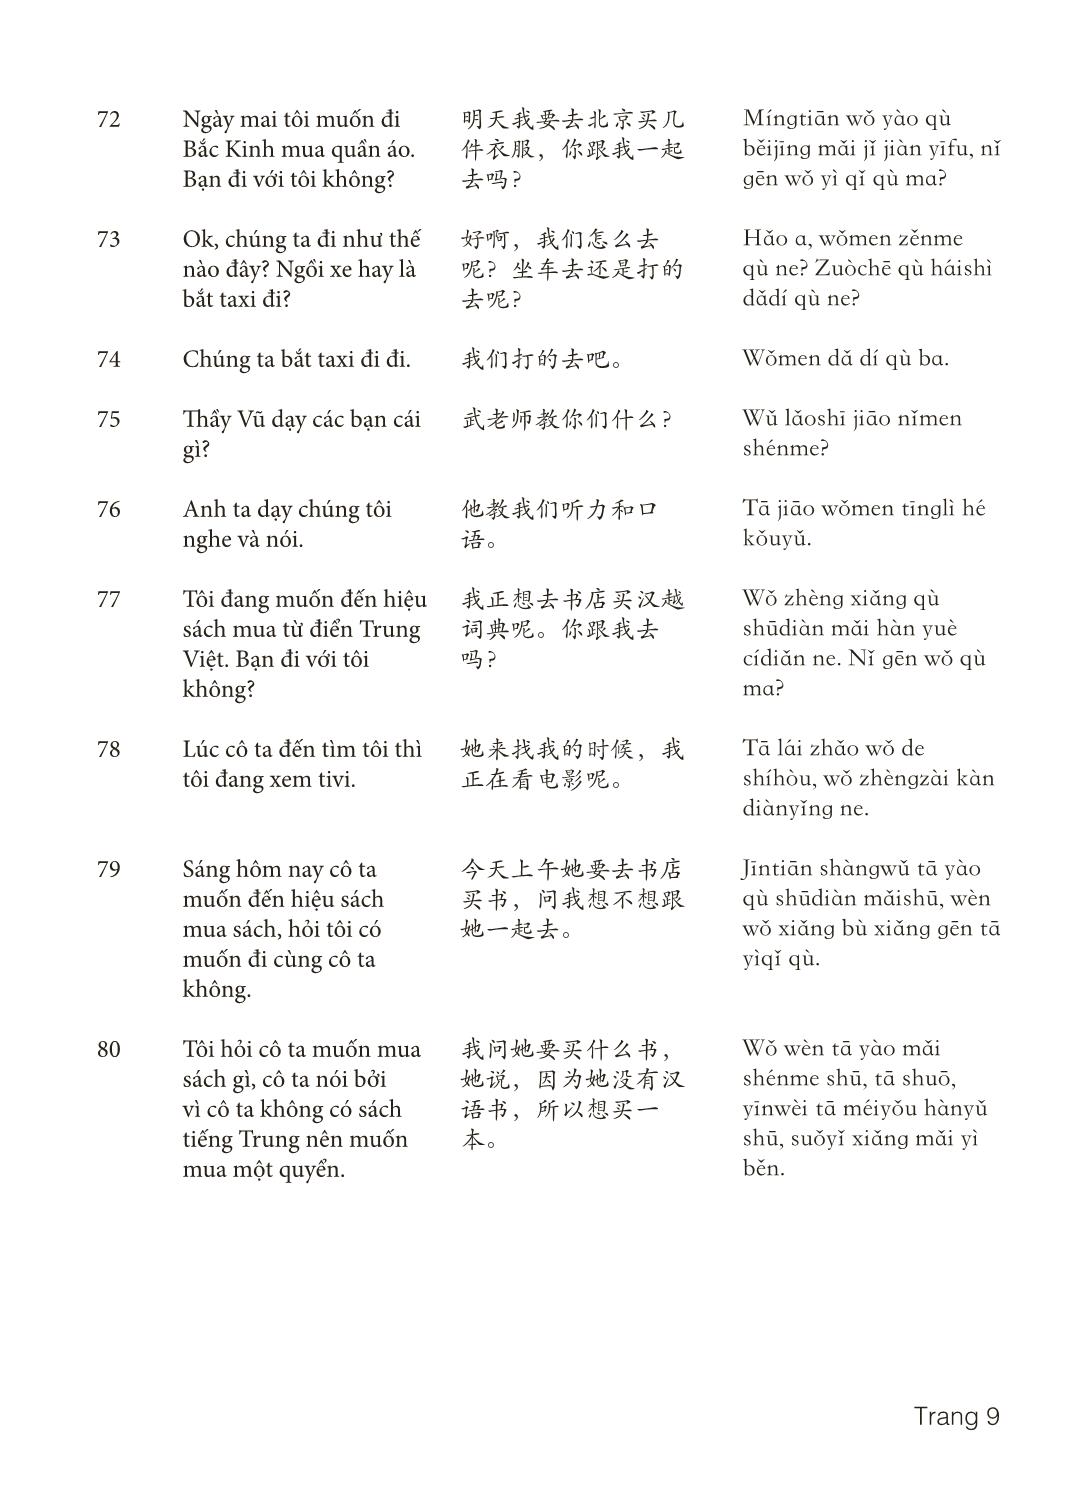 3000 Câu đàm thoại tiếng Hoa - Phần 4 trang 9